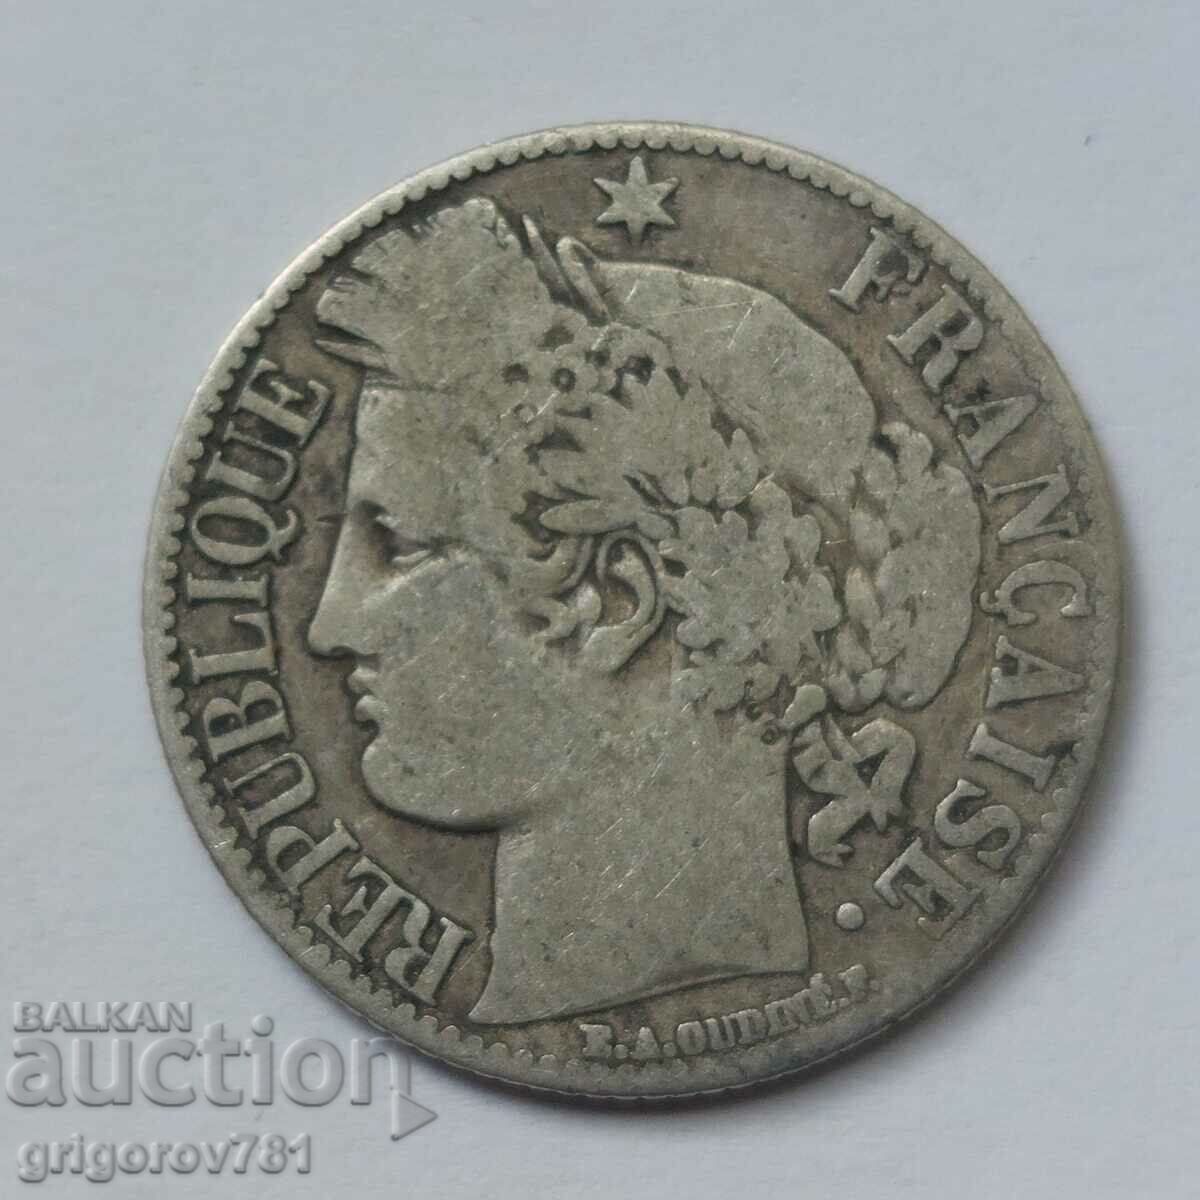 Ασήμι 1 φράγκου Γαλλία 1872 A - Ασημένιο νόμισμα #44